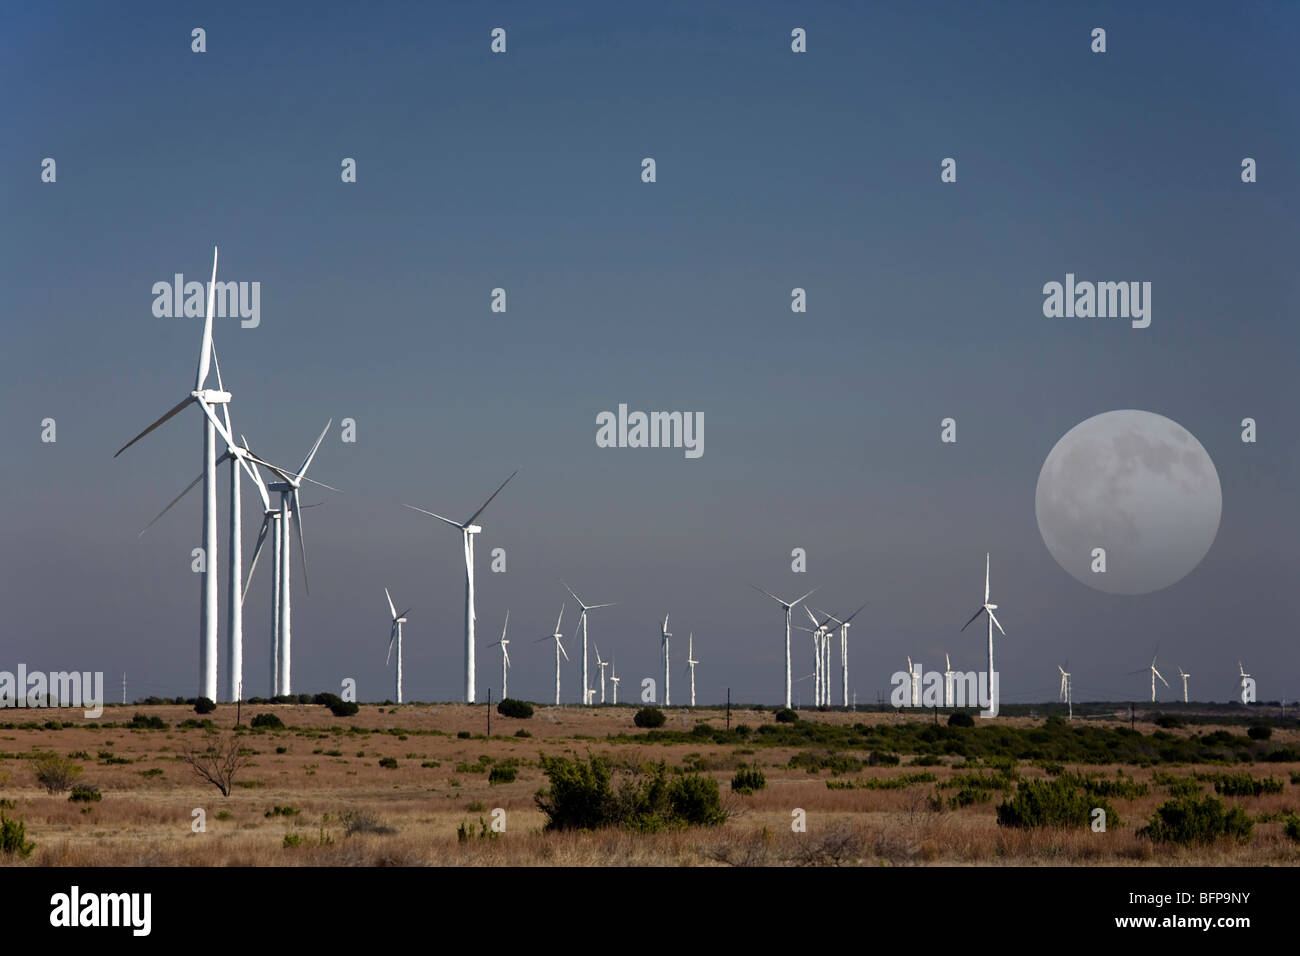 McCamey, Texas - USA. Wind turbines near McCamey, Texas. The area is known as the 'Wind Energy Capital of Texas'. Stock Photo